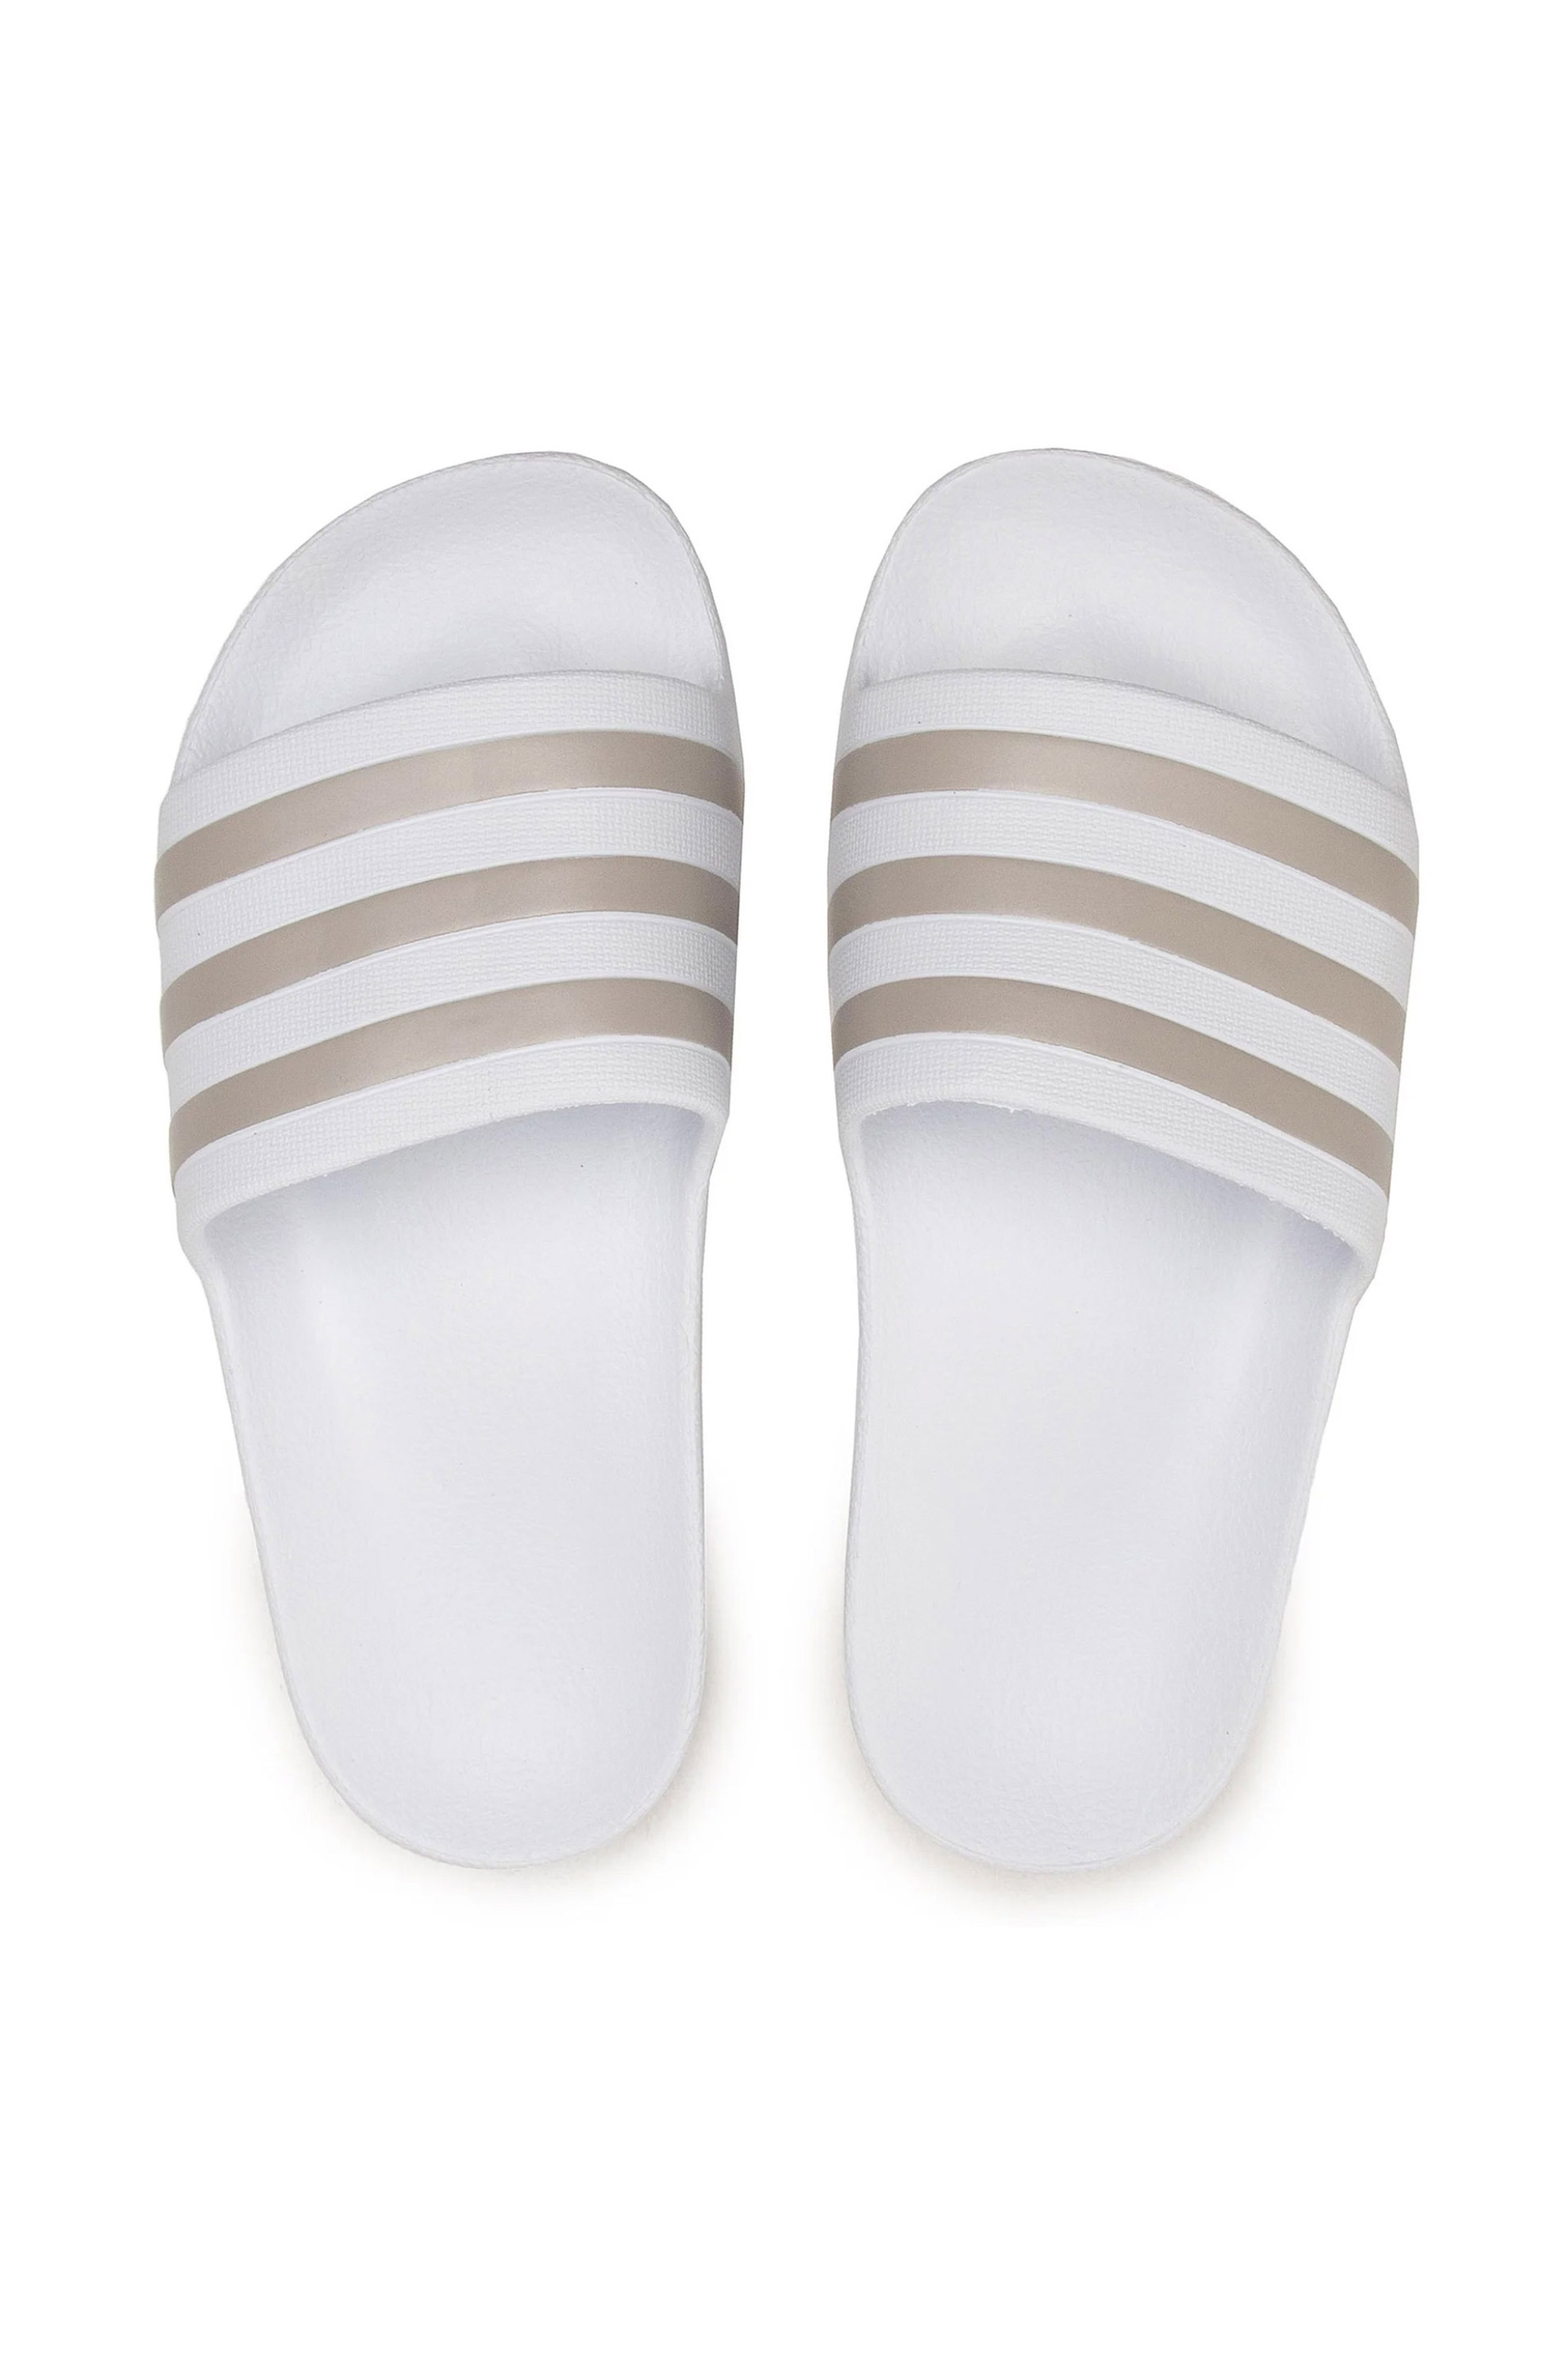 Ανδρική Μόδα > Ανδρικά Παπούτσια > Ανδρικές Παντόφλες & Σαγιονάρες Adidas unisex σαγιονάρες με ανάγλυφο λογότυπο "Adilette Aqua Slides" - EF1730 Λευκό